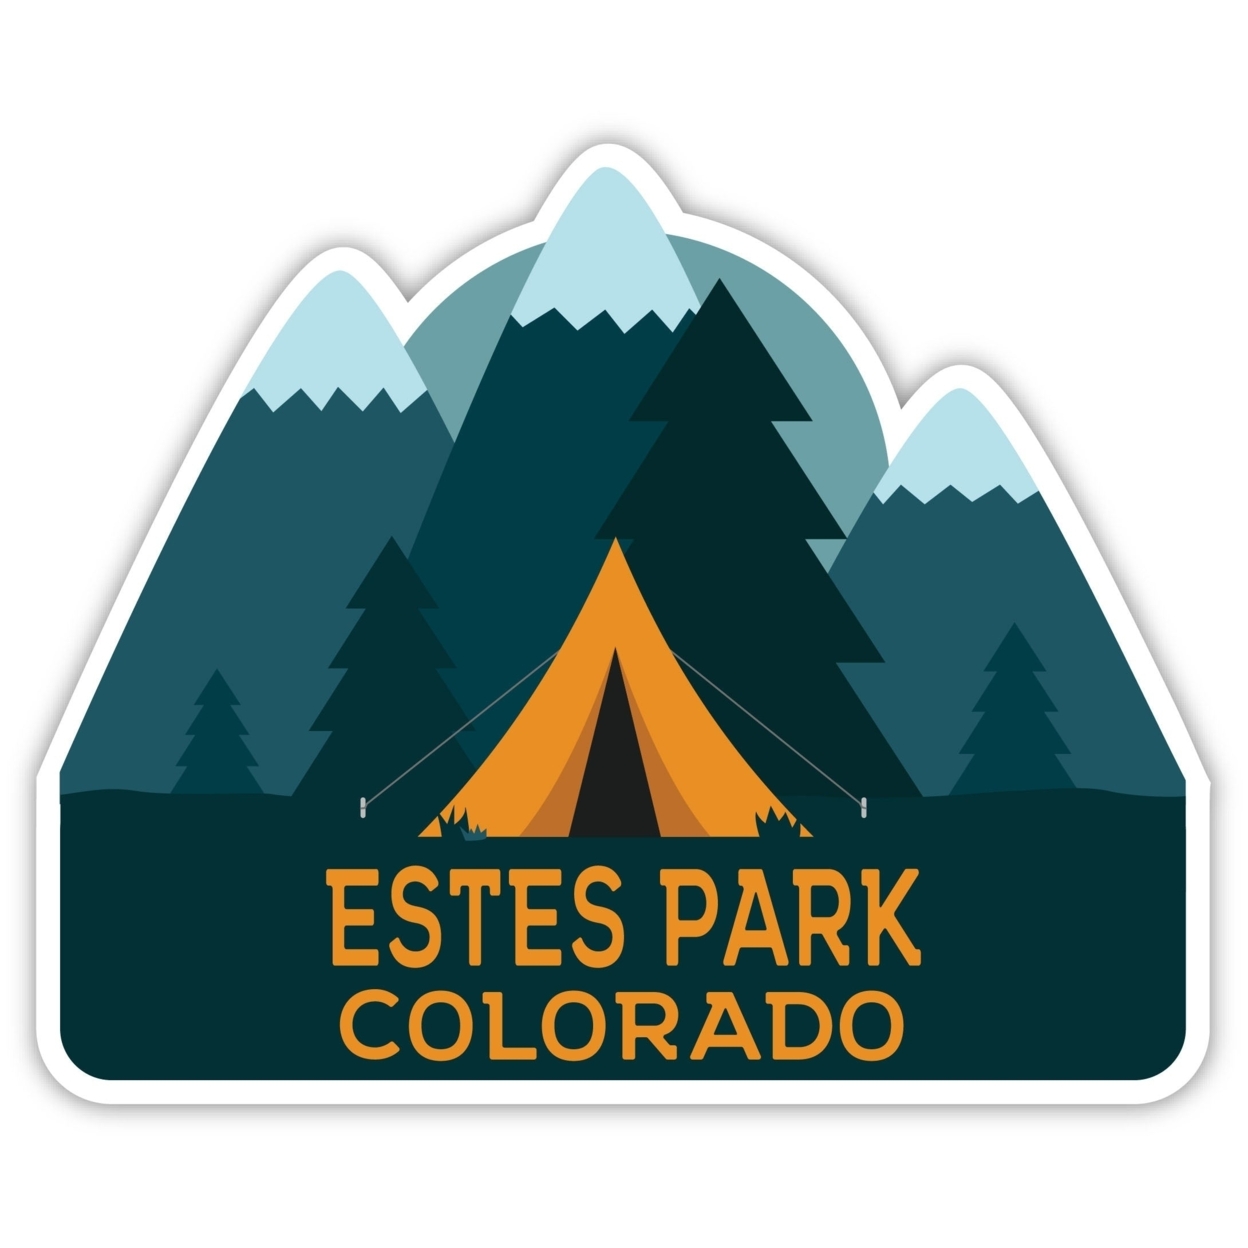 Estes Park Colorado Souvenir Decorative Stickers (Choose Theme And Size) - Single Unit, 8-Inch, Bear